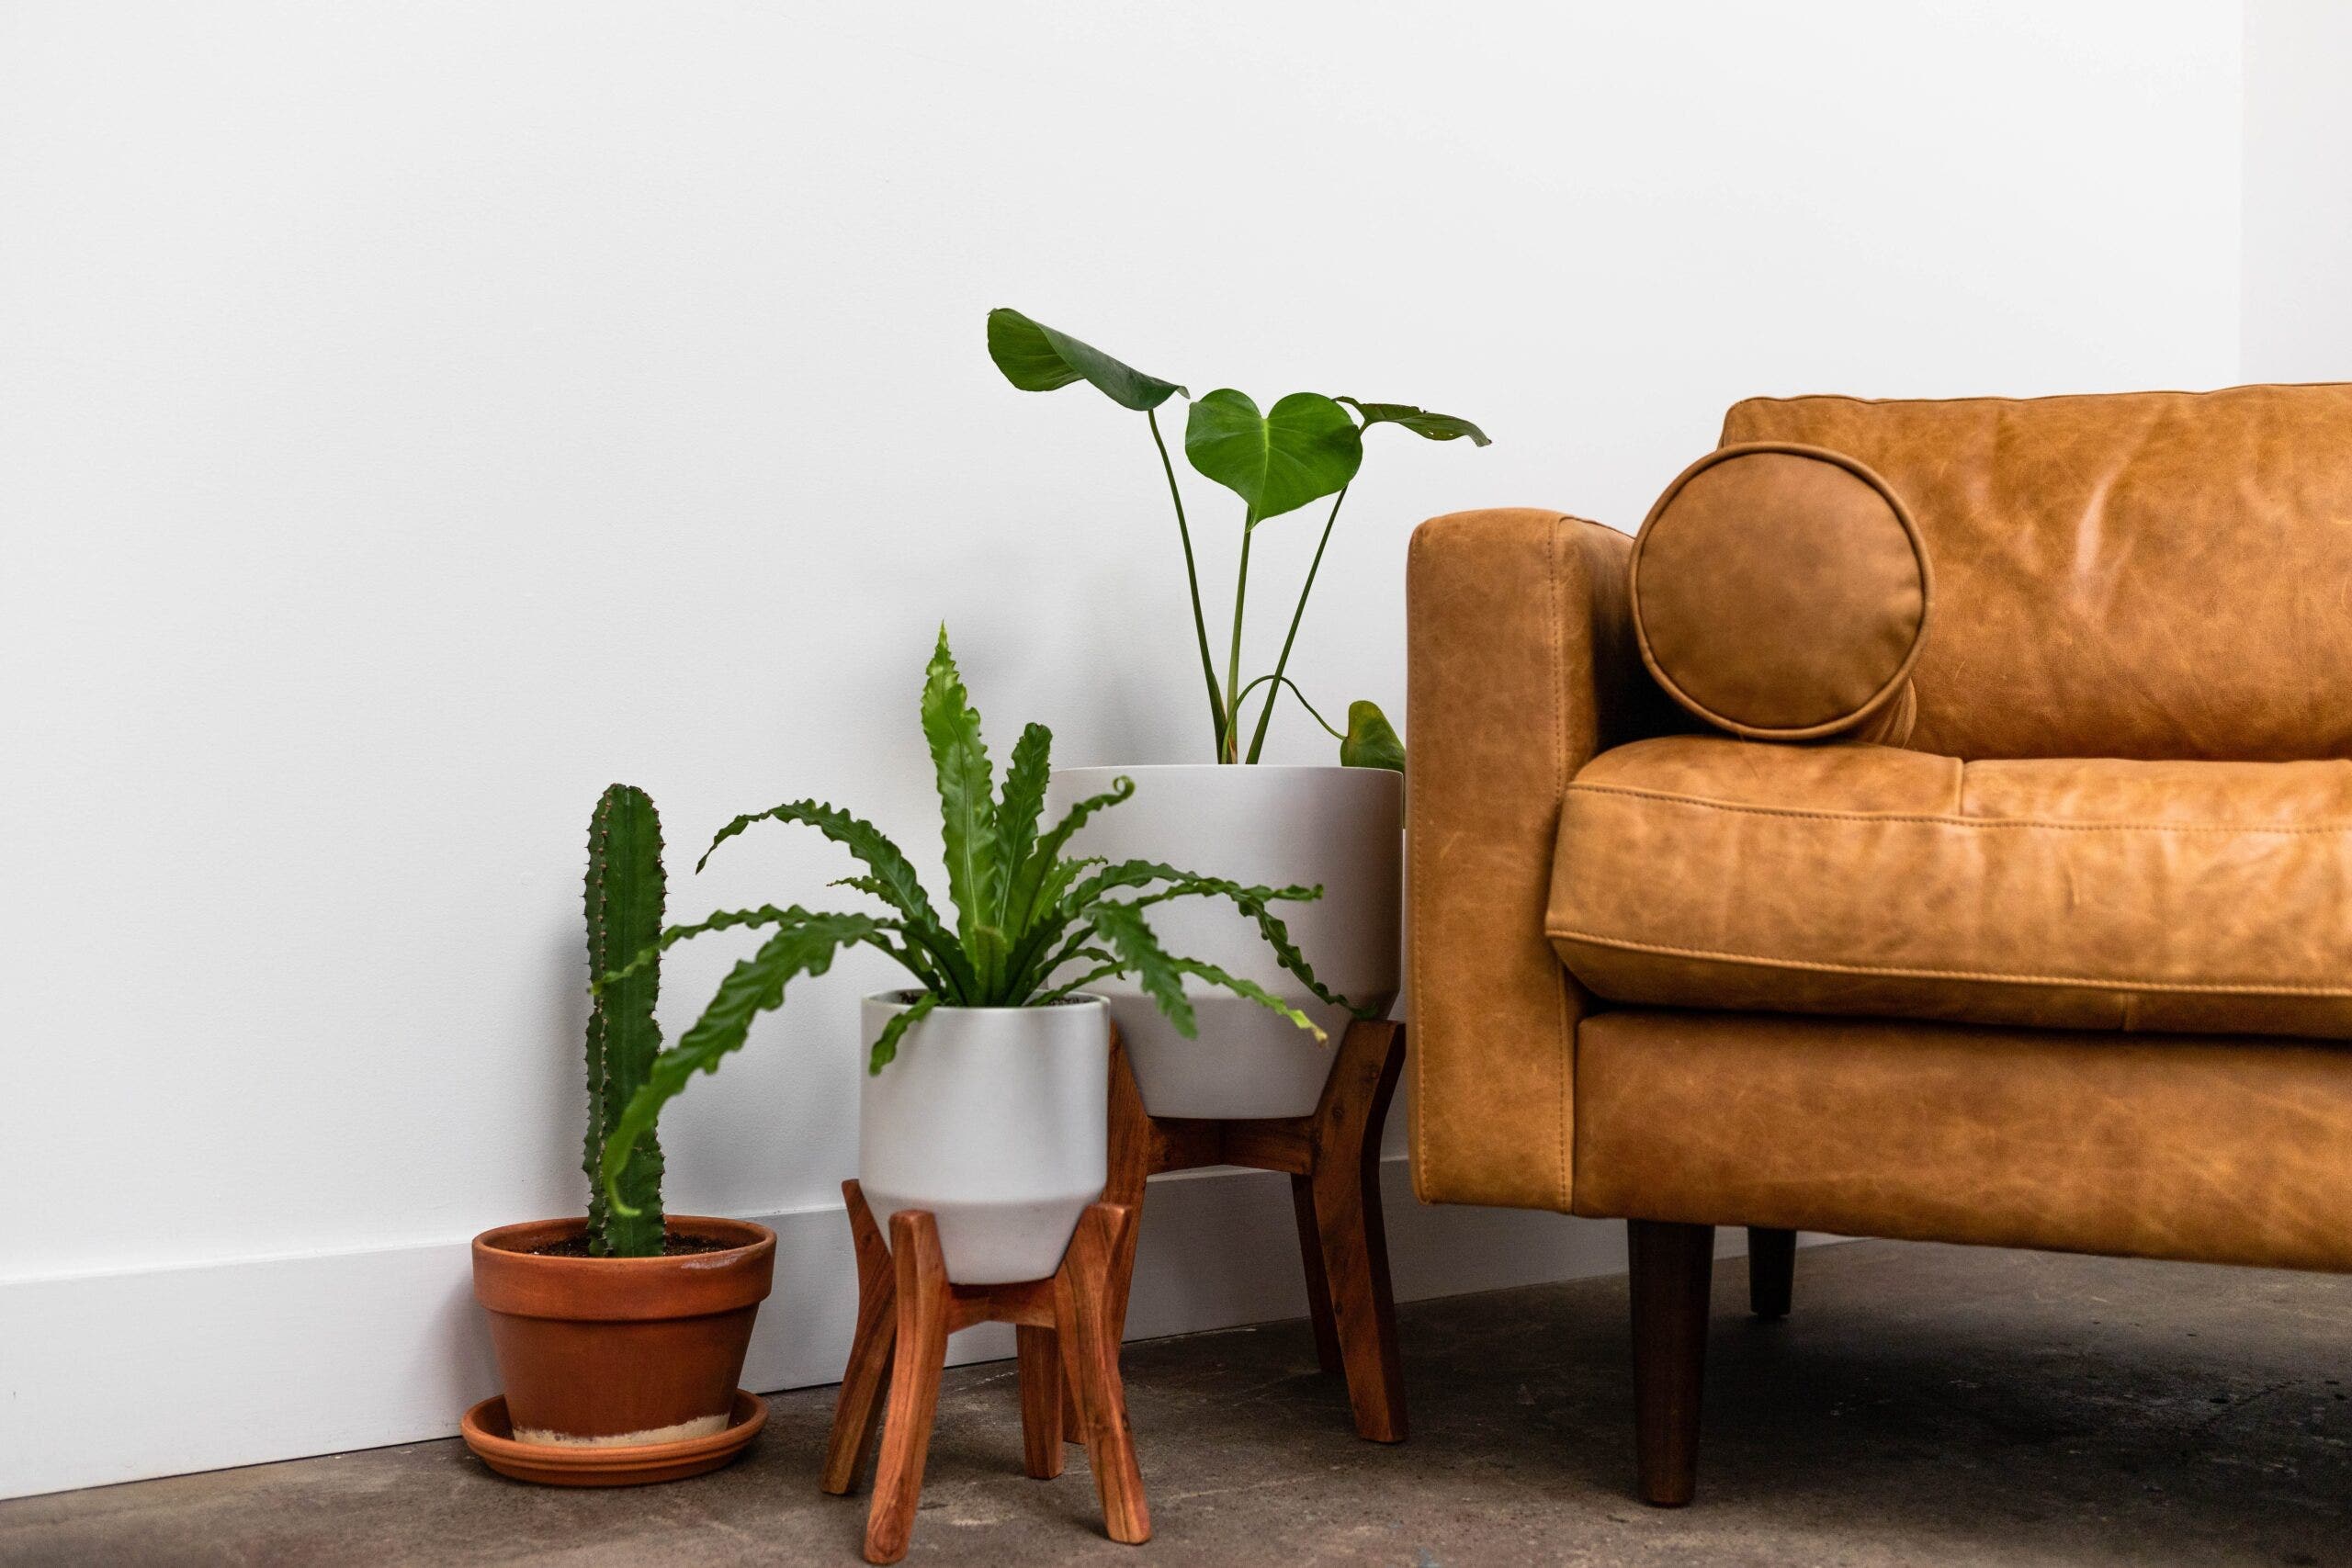 Orange Leather Couch Next to Floor Plants